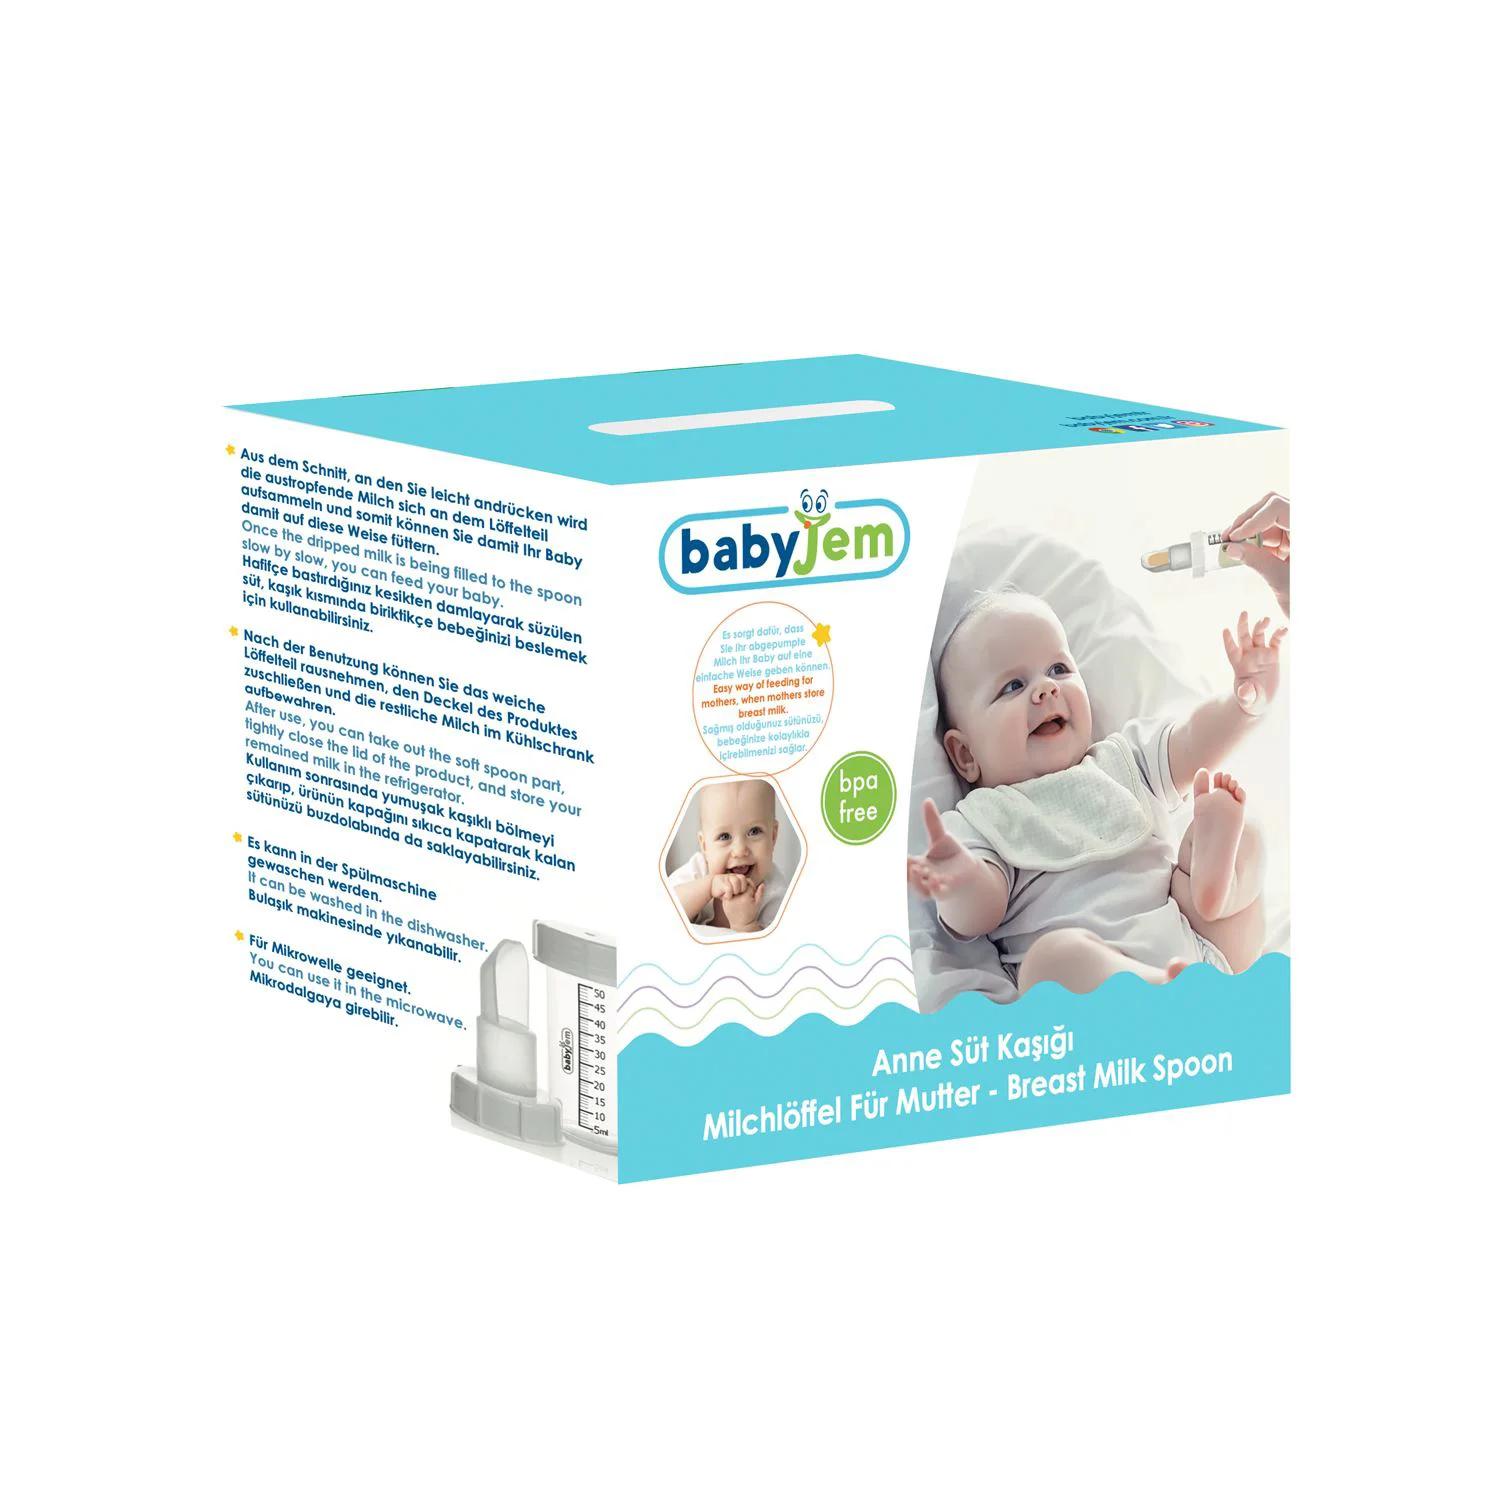 Градуированное устройство для грудного молока или лекарств BabyJem